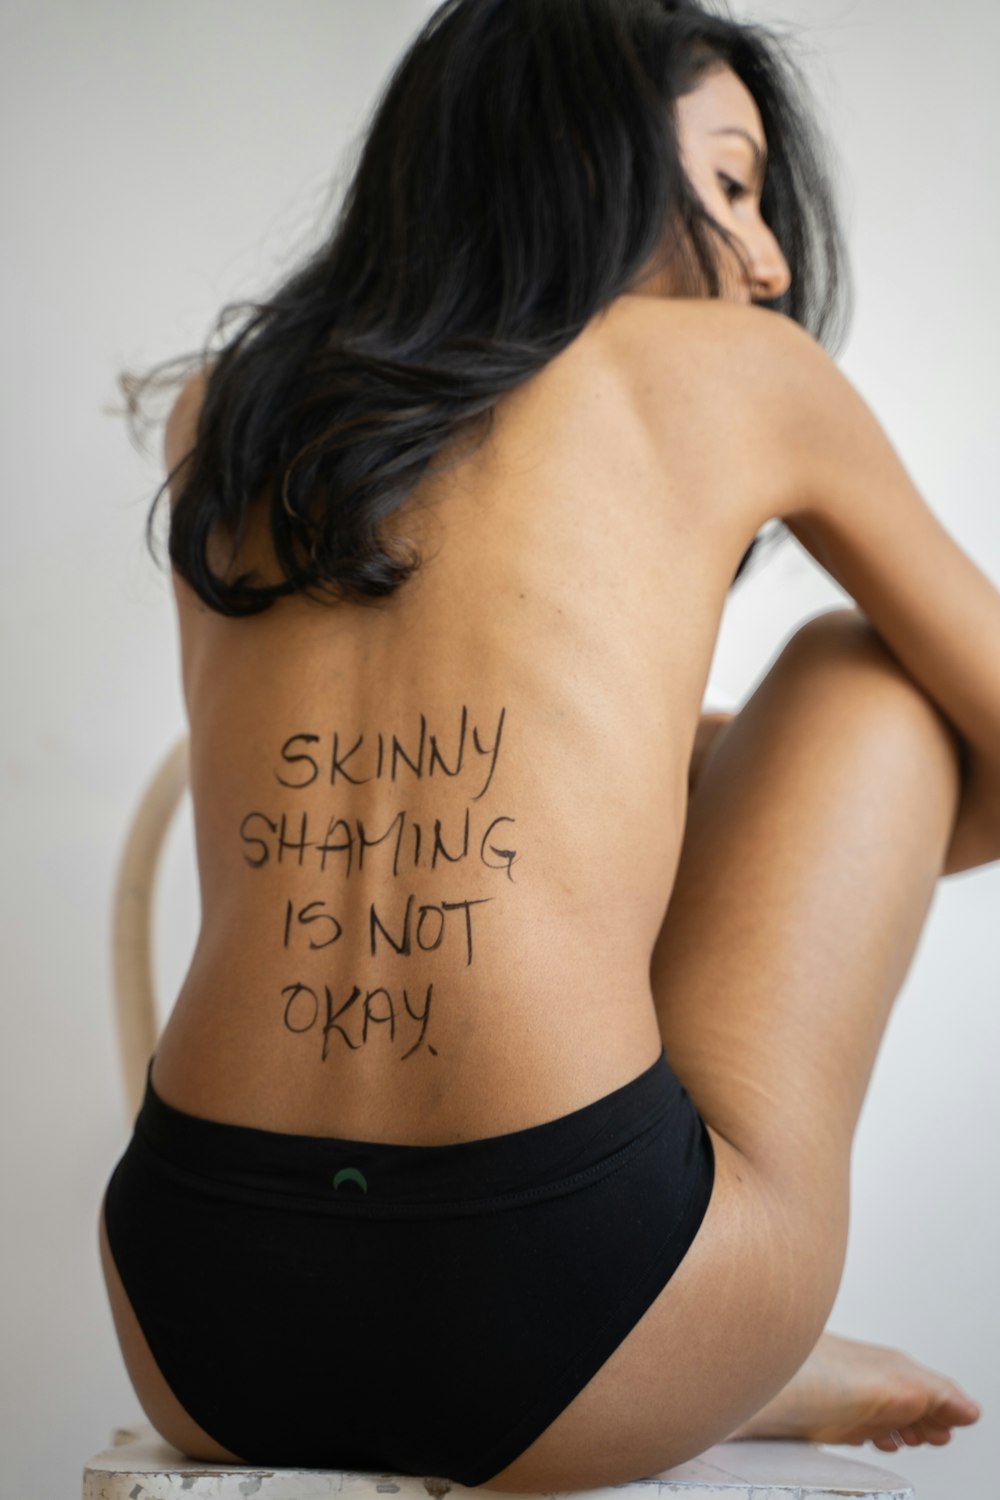 uma mulher com uma tatuagem nas costas dizendo que a vergonha magra não está bem